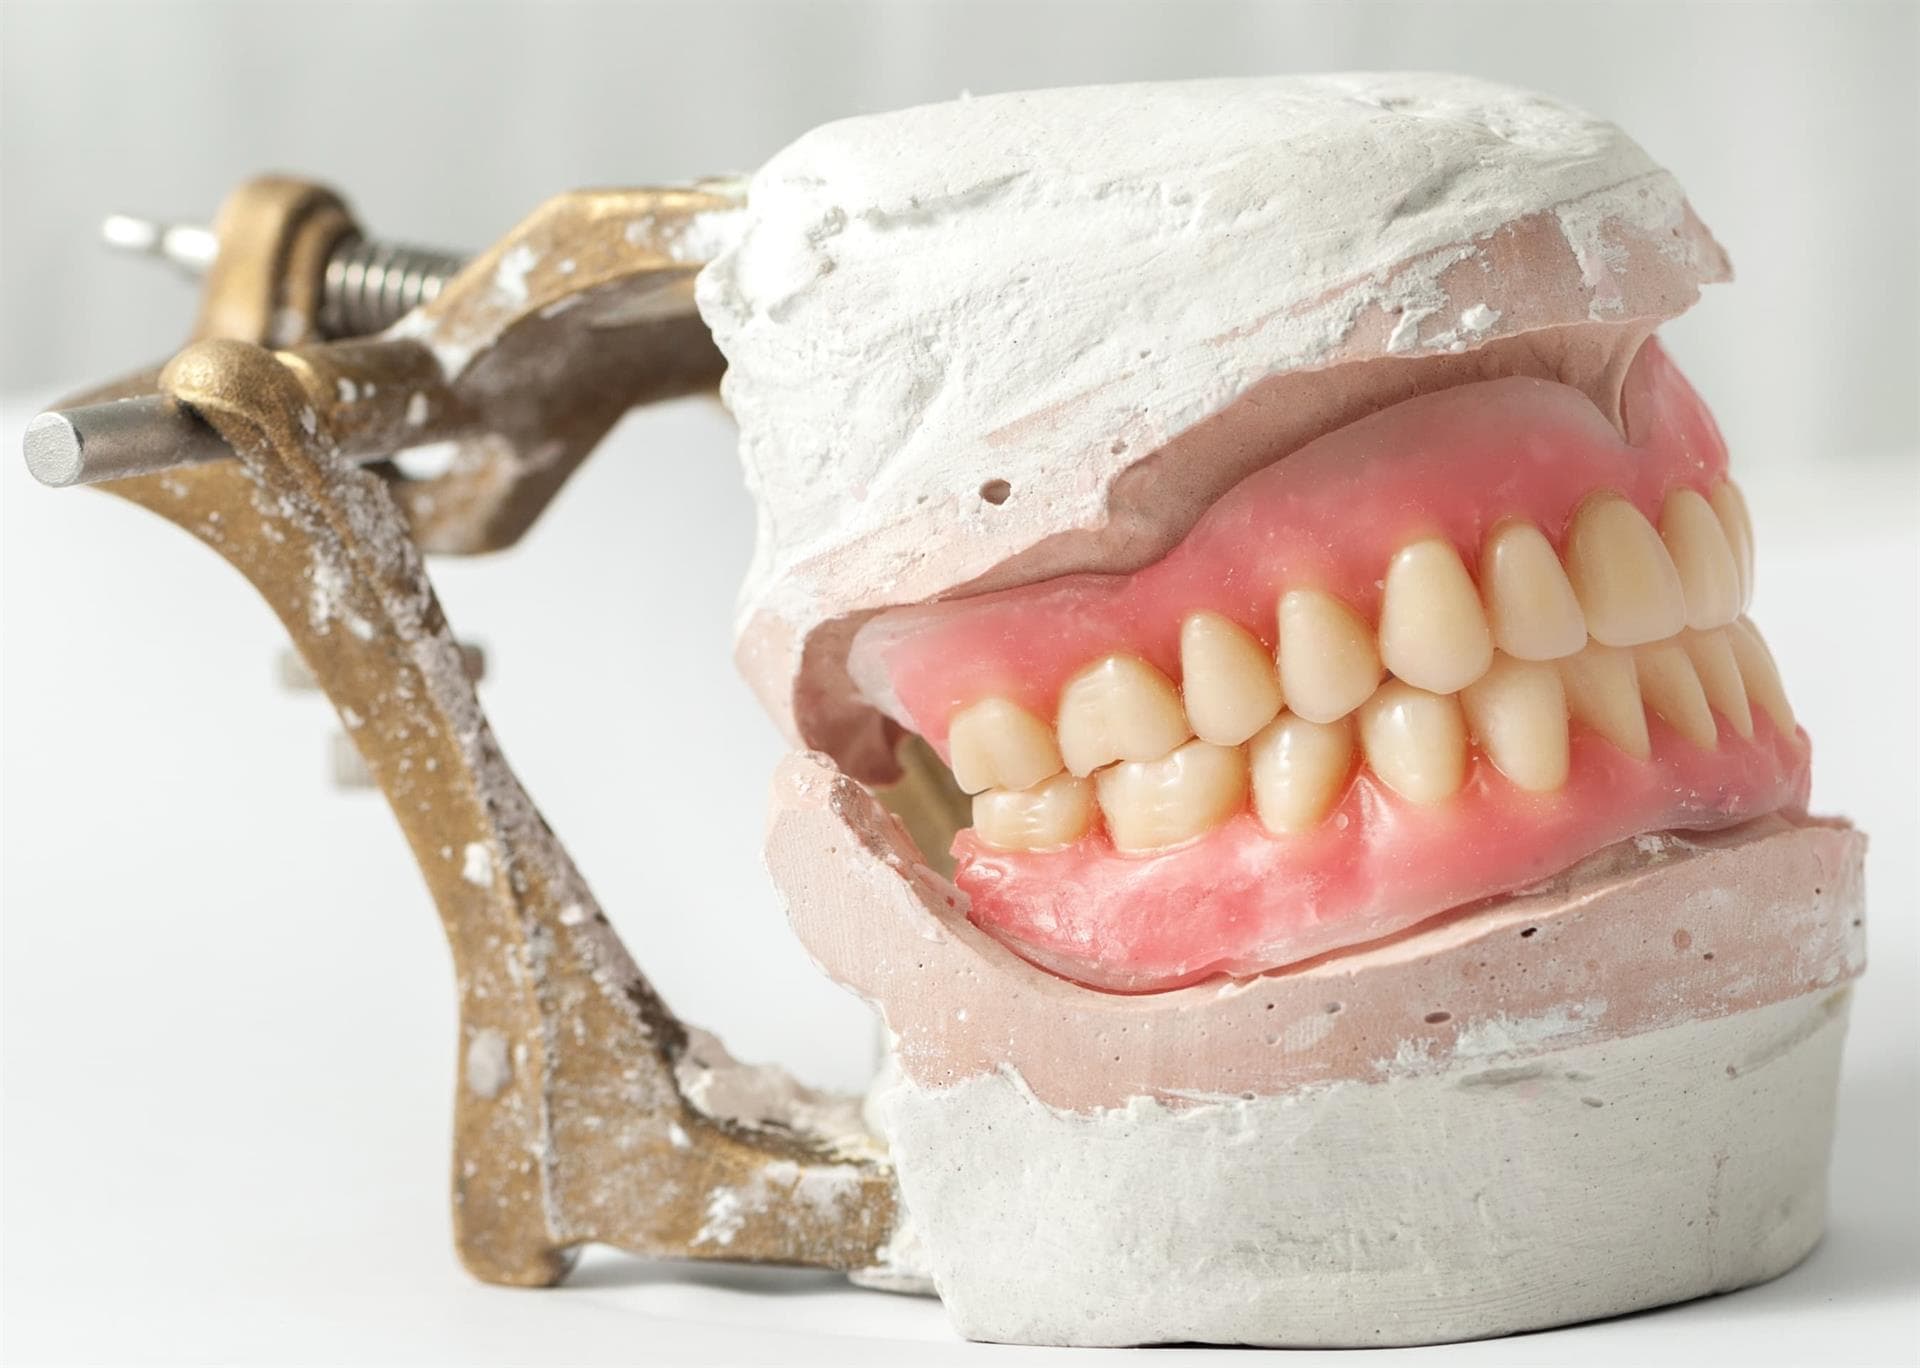 Centro Odontológico Dentine - Prótesis dentales